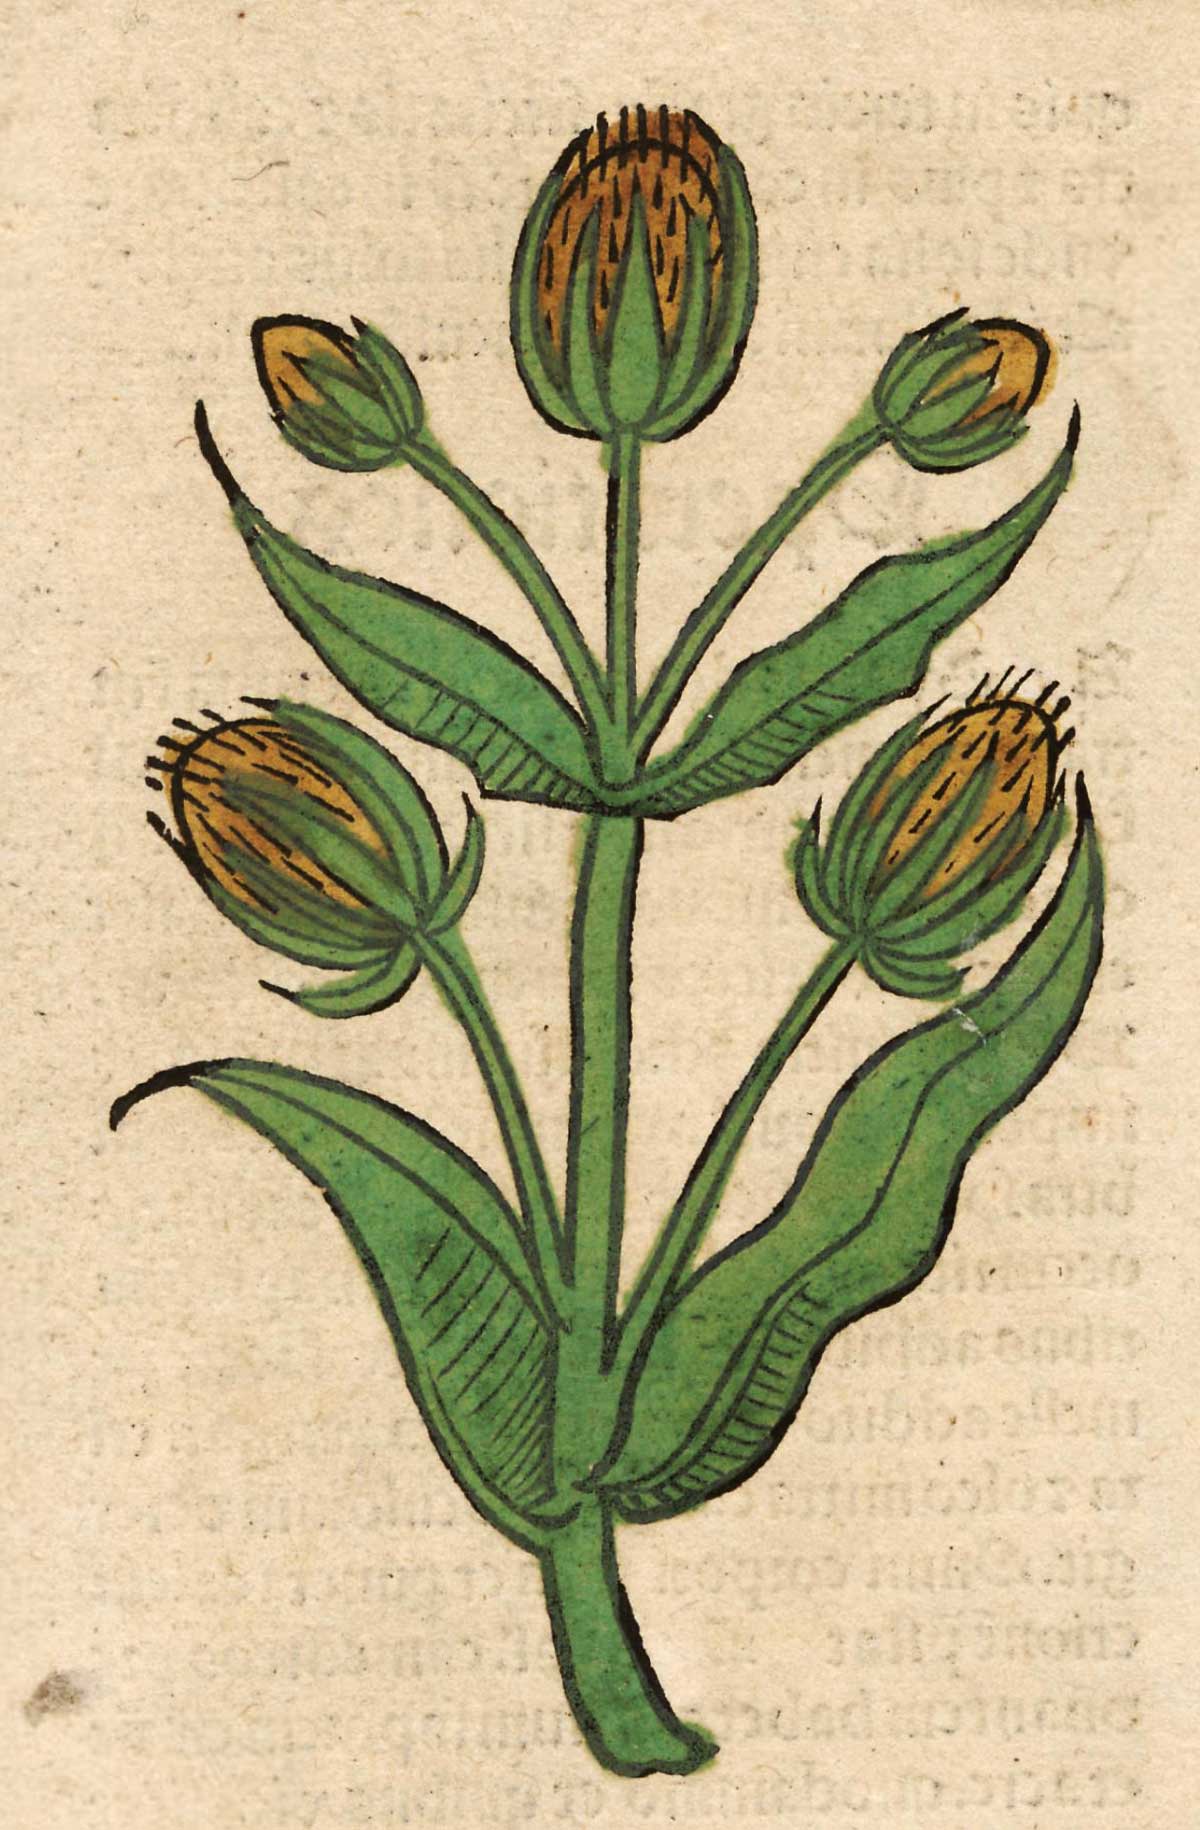 Cardus. Meydenbach, Ortus Sanitatis (1491)